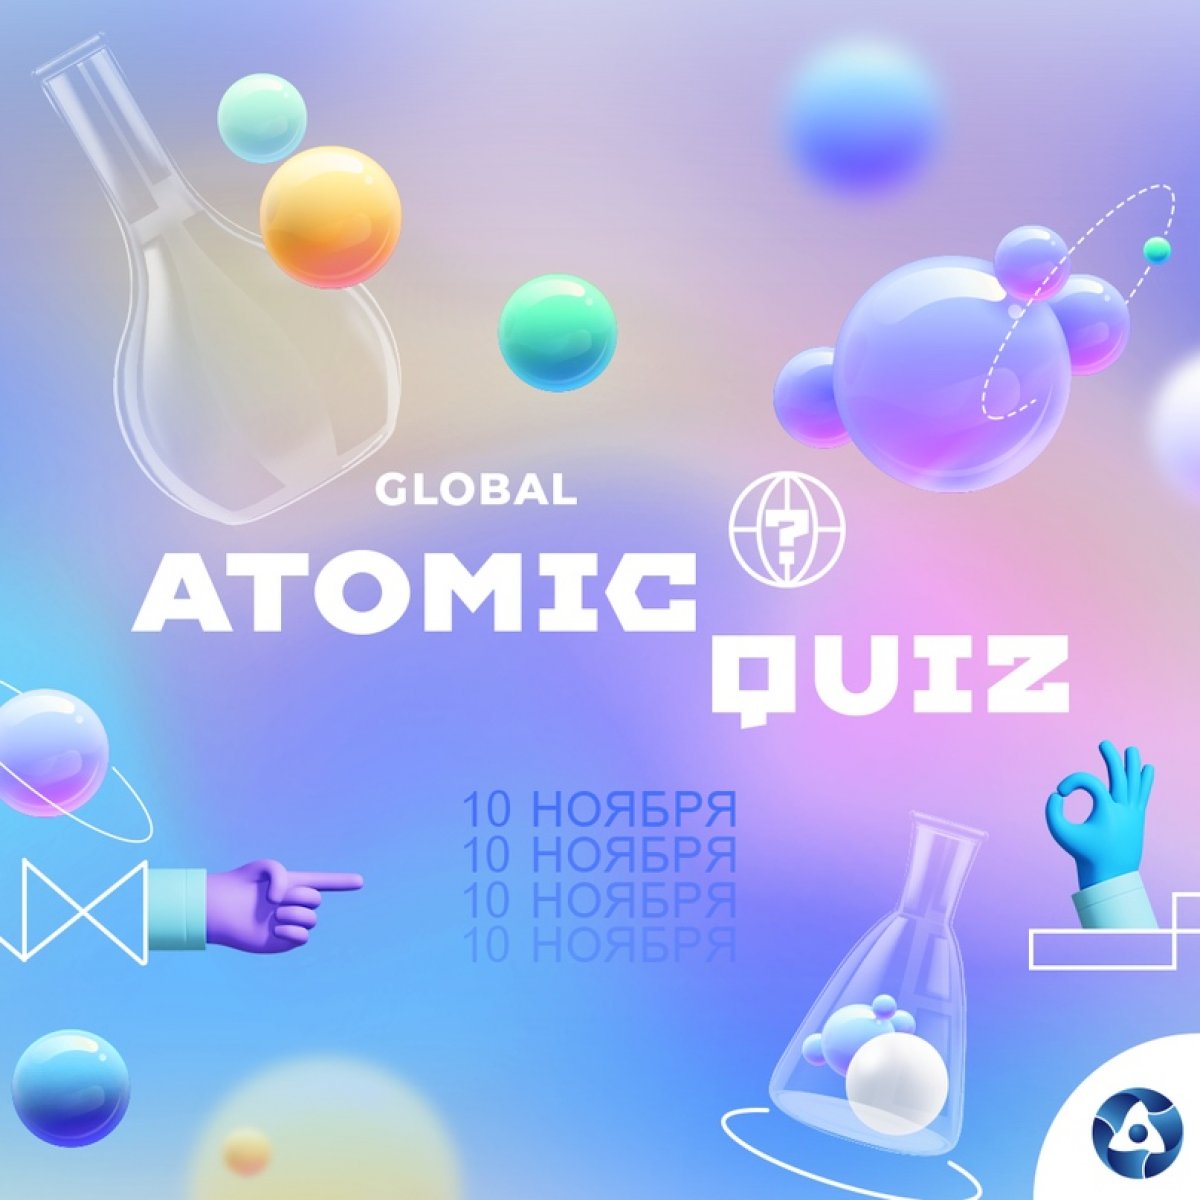 10 ноября Росатом проводит международную викторину Global Atomic Quiz. Она будет доступна на 11 (!) языках. И посвящена мирному атому. Викторина будет доступна в течение 24 часов 10 ноября на сайте quiz.myfuture.energy